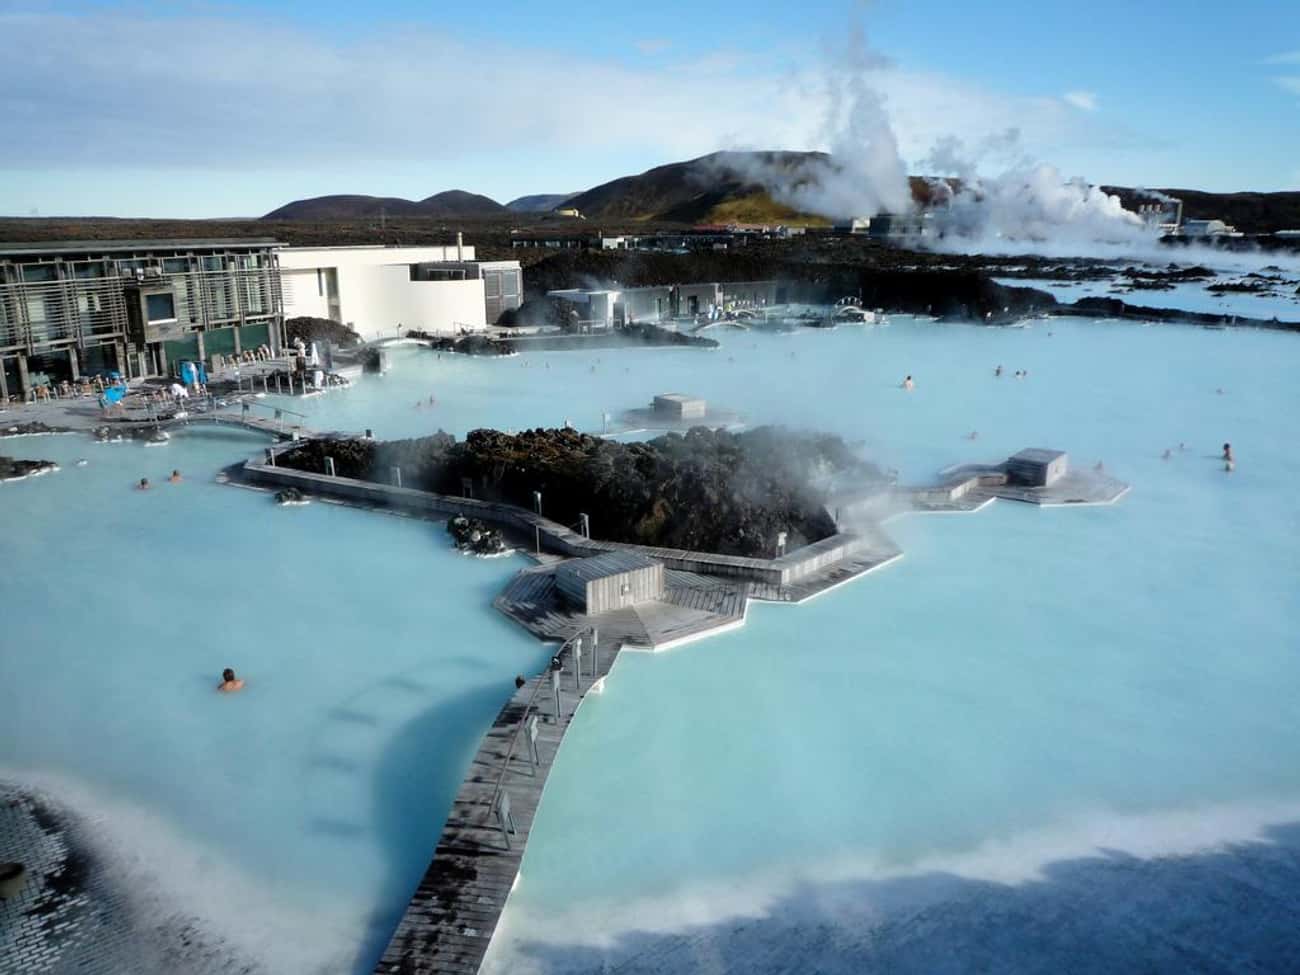 Blue Lagoon Geothermal Resort - Grindavík, Iceland